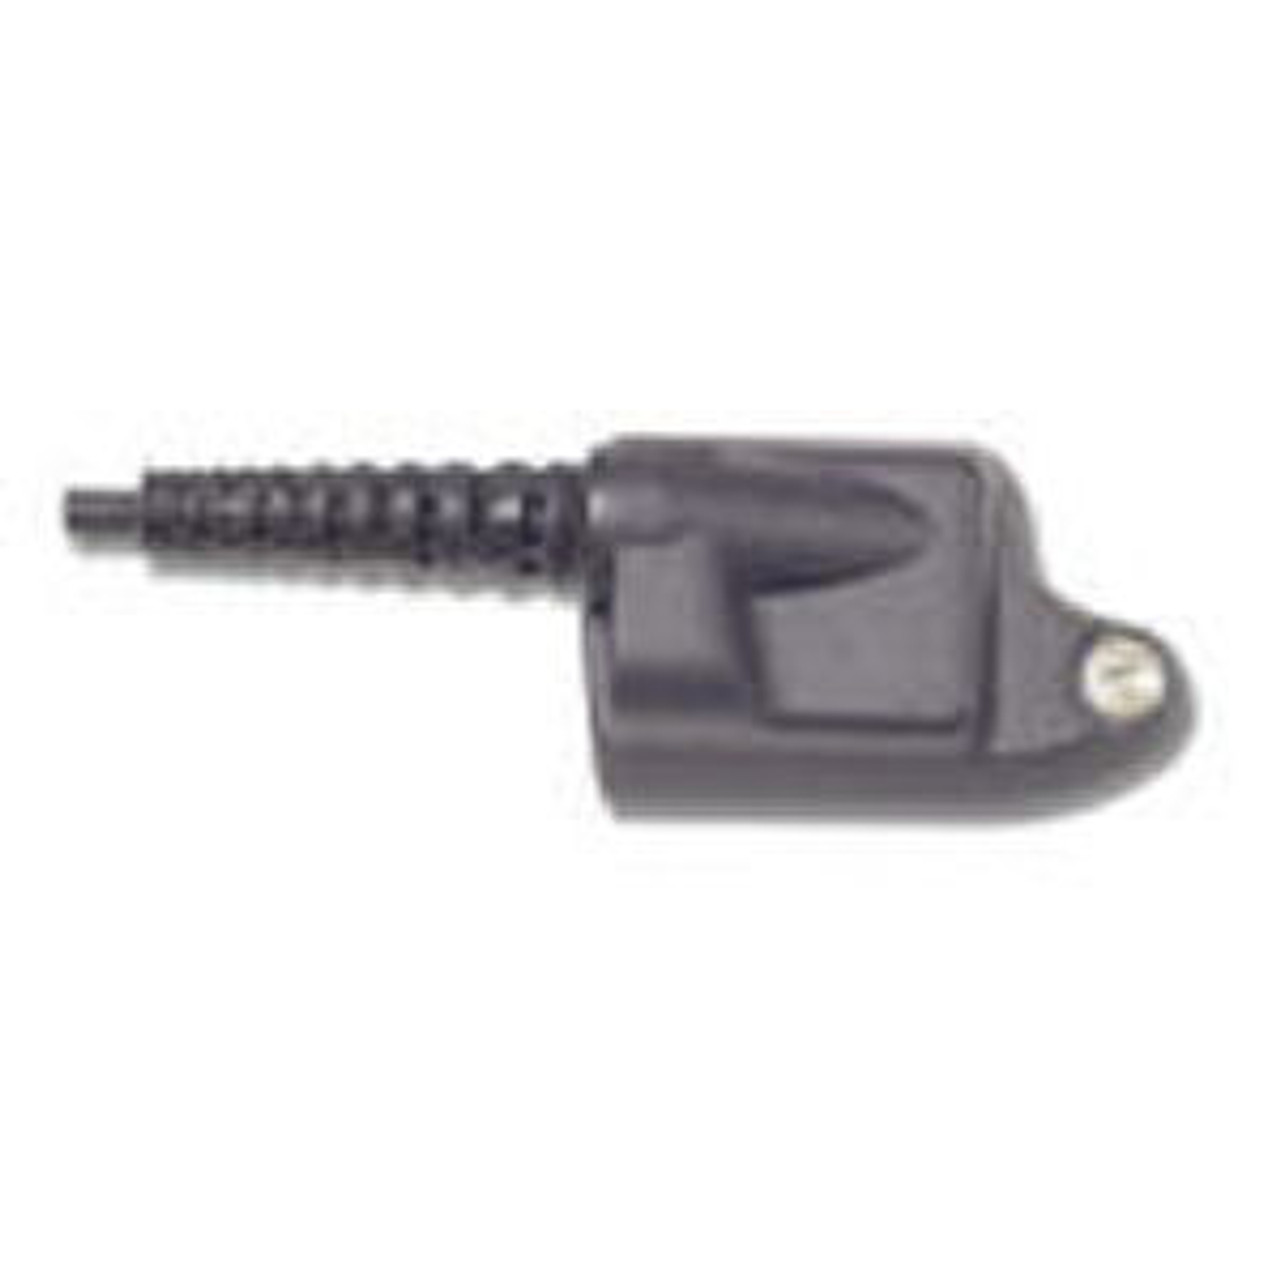 M/A-Com P7170 3-Wire/3.5mm Female Surveillance Kit